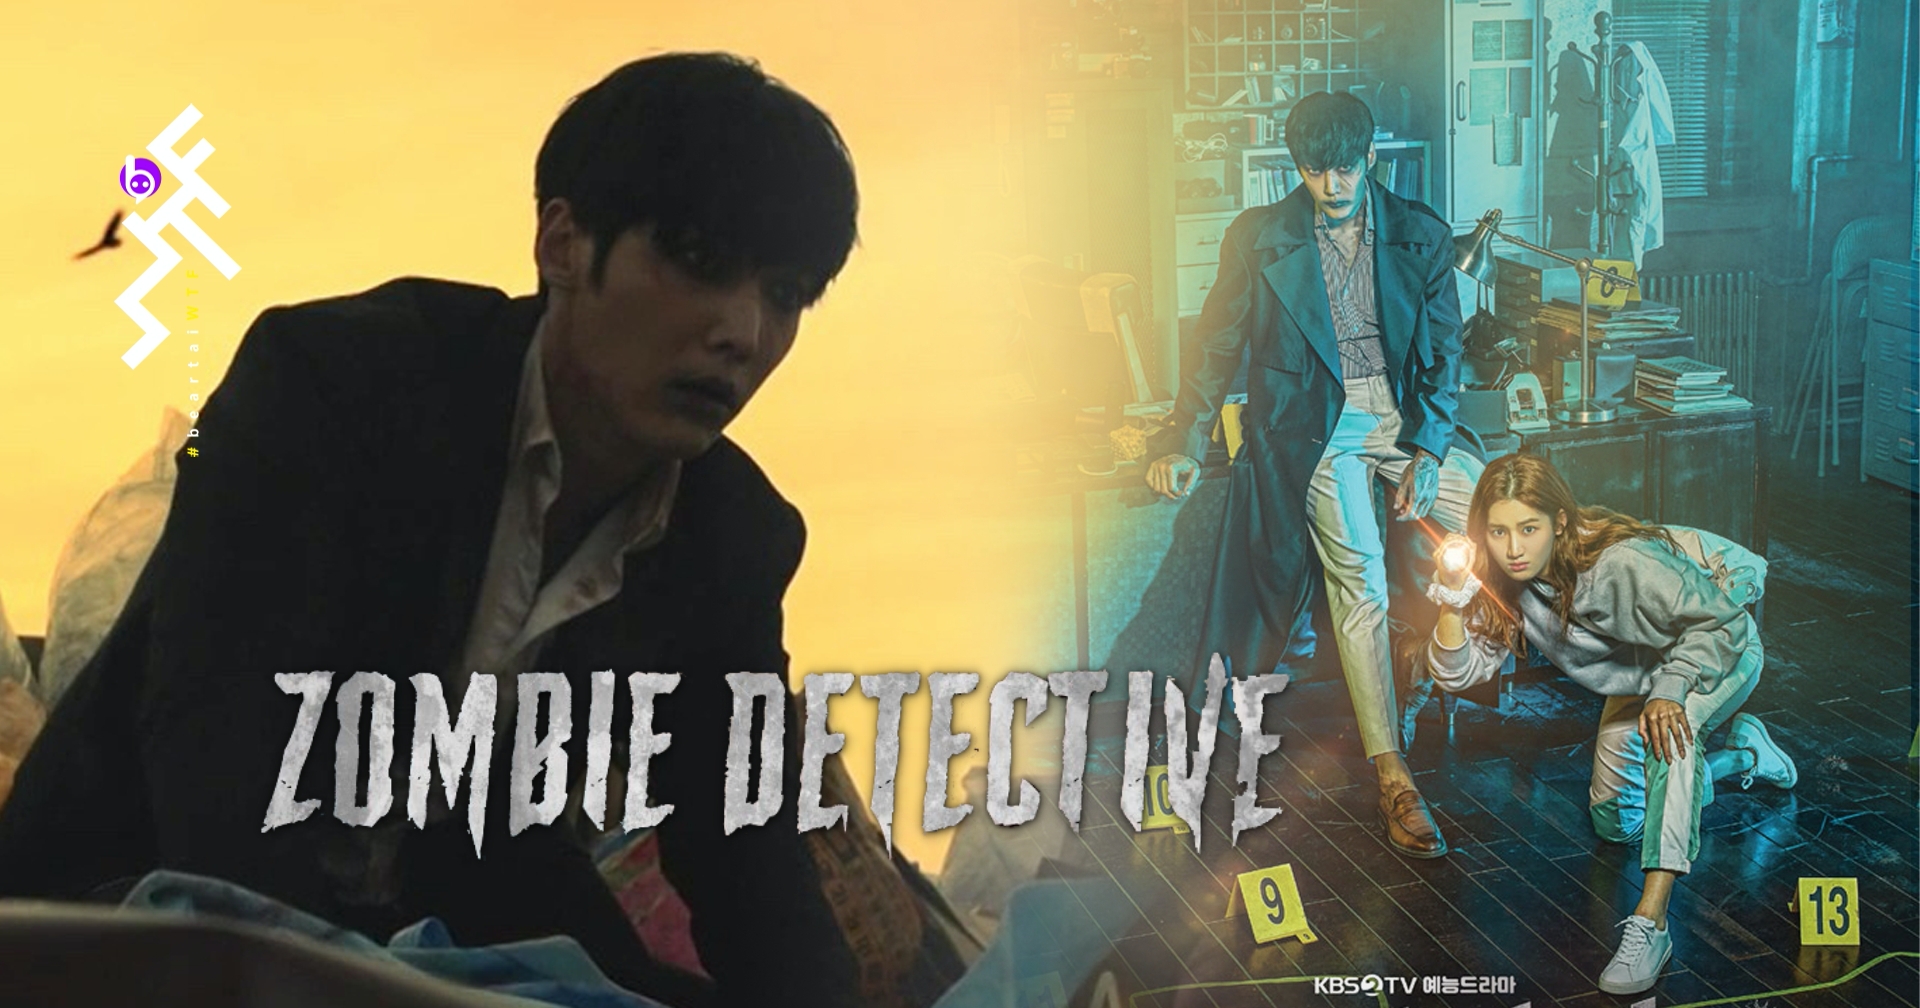 [รีวิวซีรีส์] Zombie Detective : ซอมบี้สายมุ้งมิ้ง ฮากรุบกริบ ดราม่าน่าดู